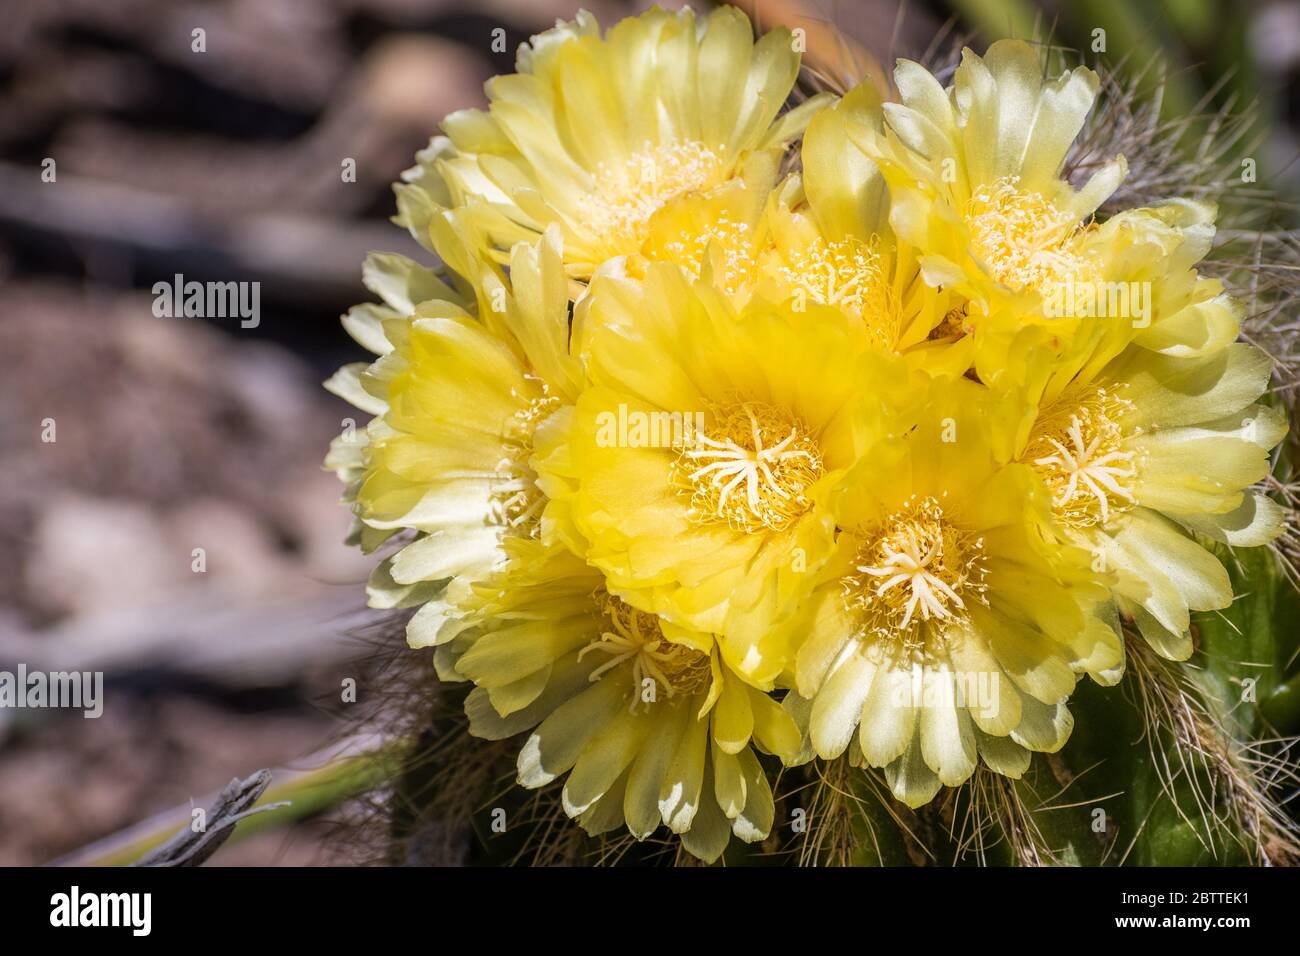 Gros plan sur les fleurs jaunes du cactus Hedgehog (Echinocereus), Californie Banque D'Images